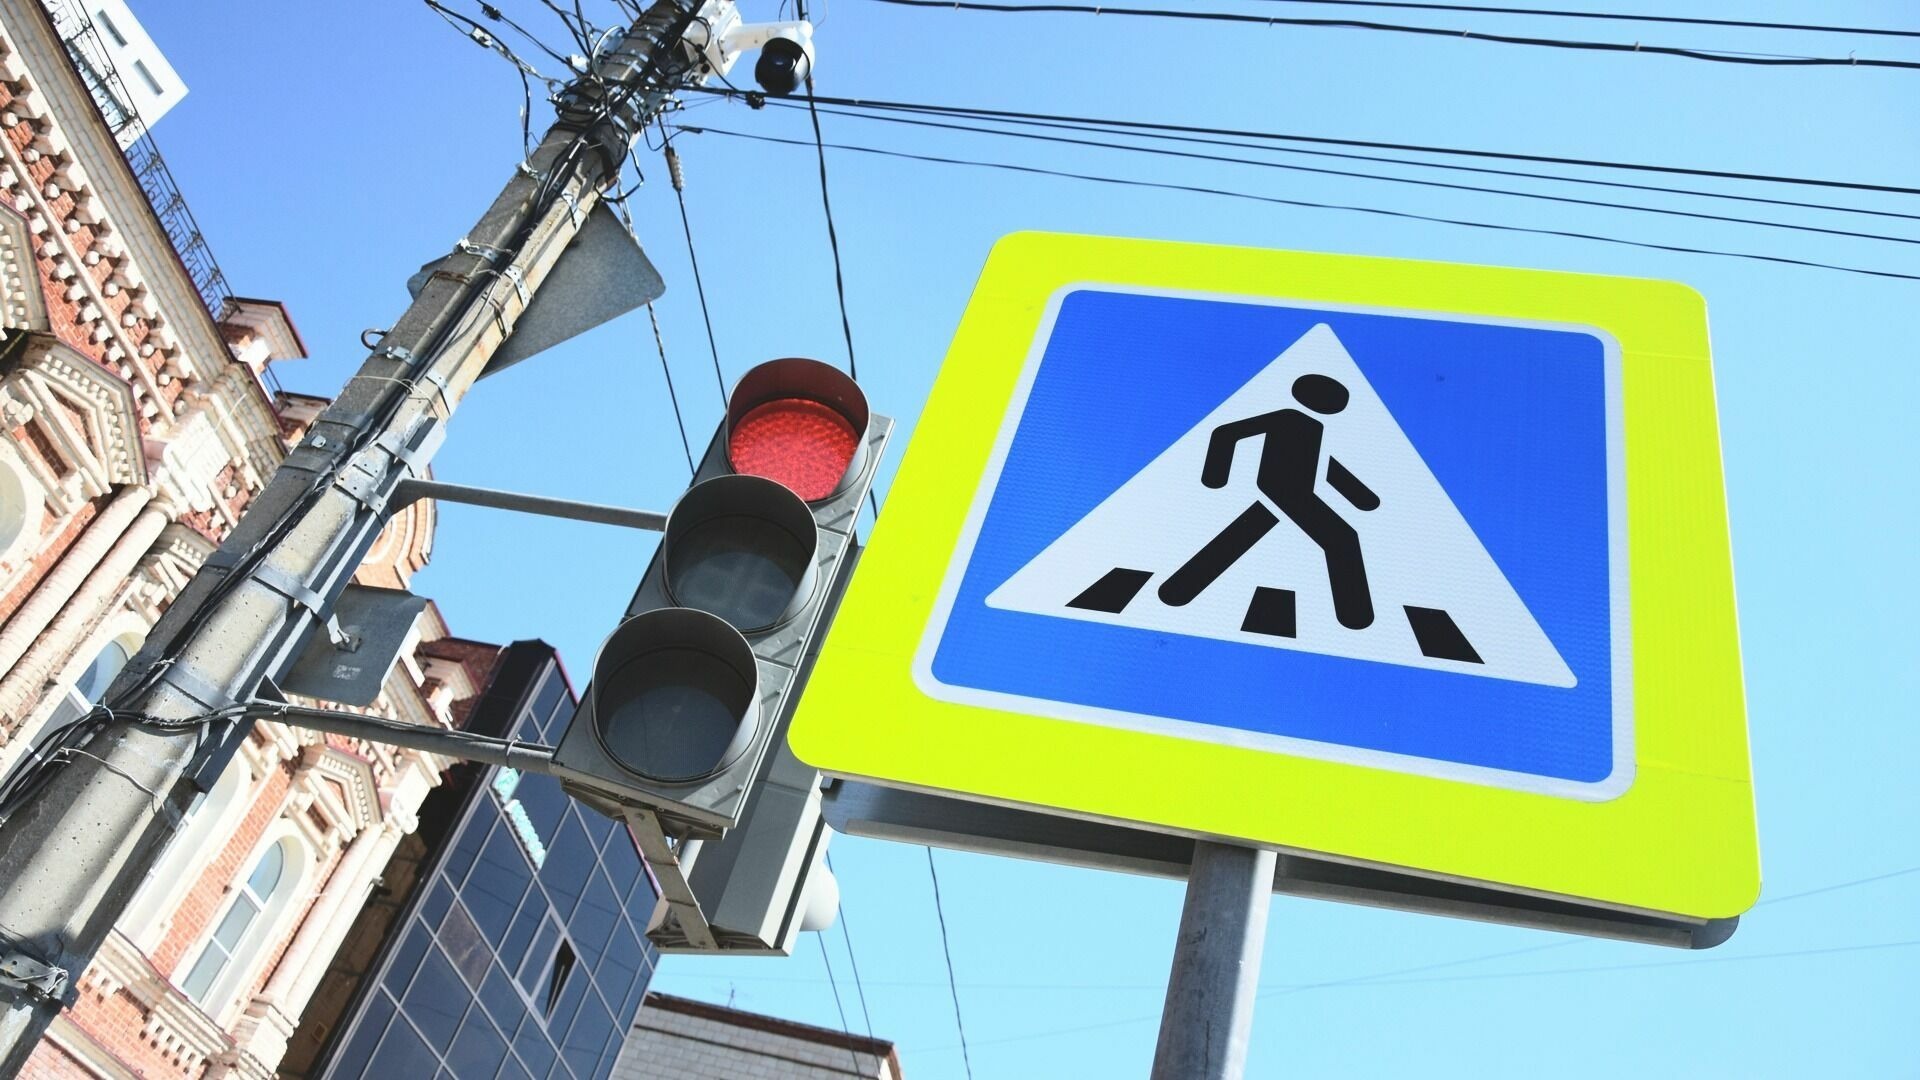 Власти Ставрополя сообщили об уменьшении пробок в городе благодаря «умной» системе